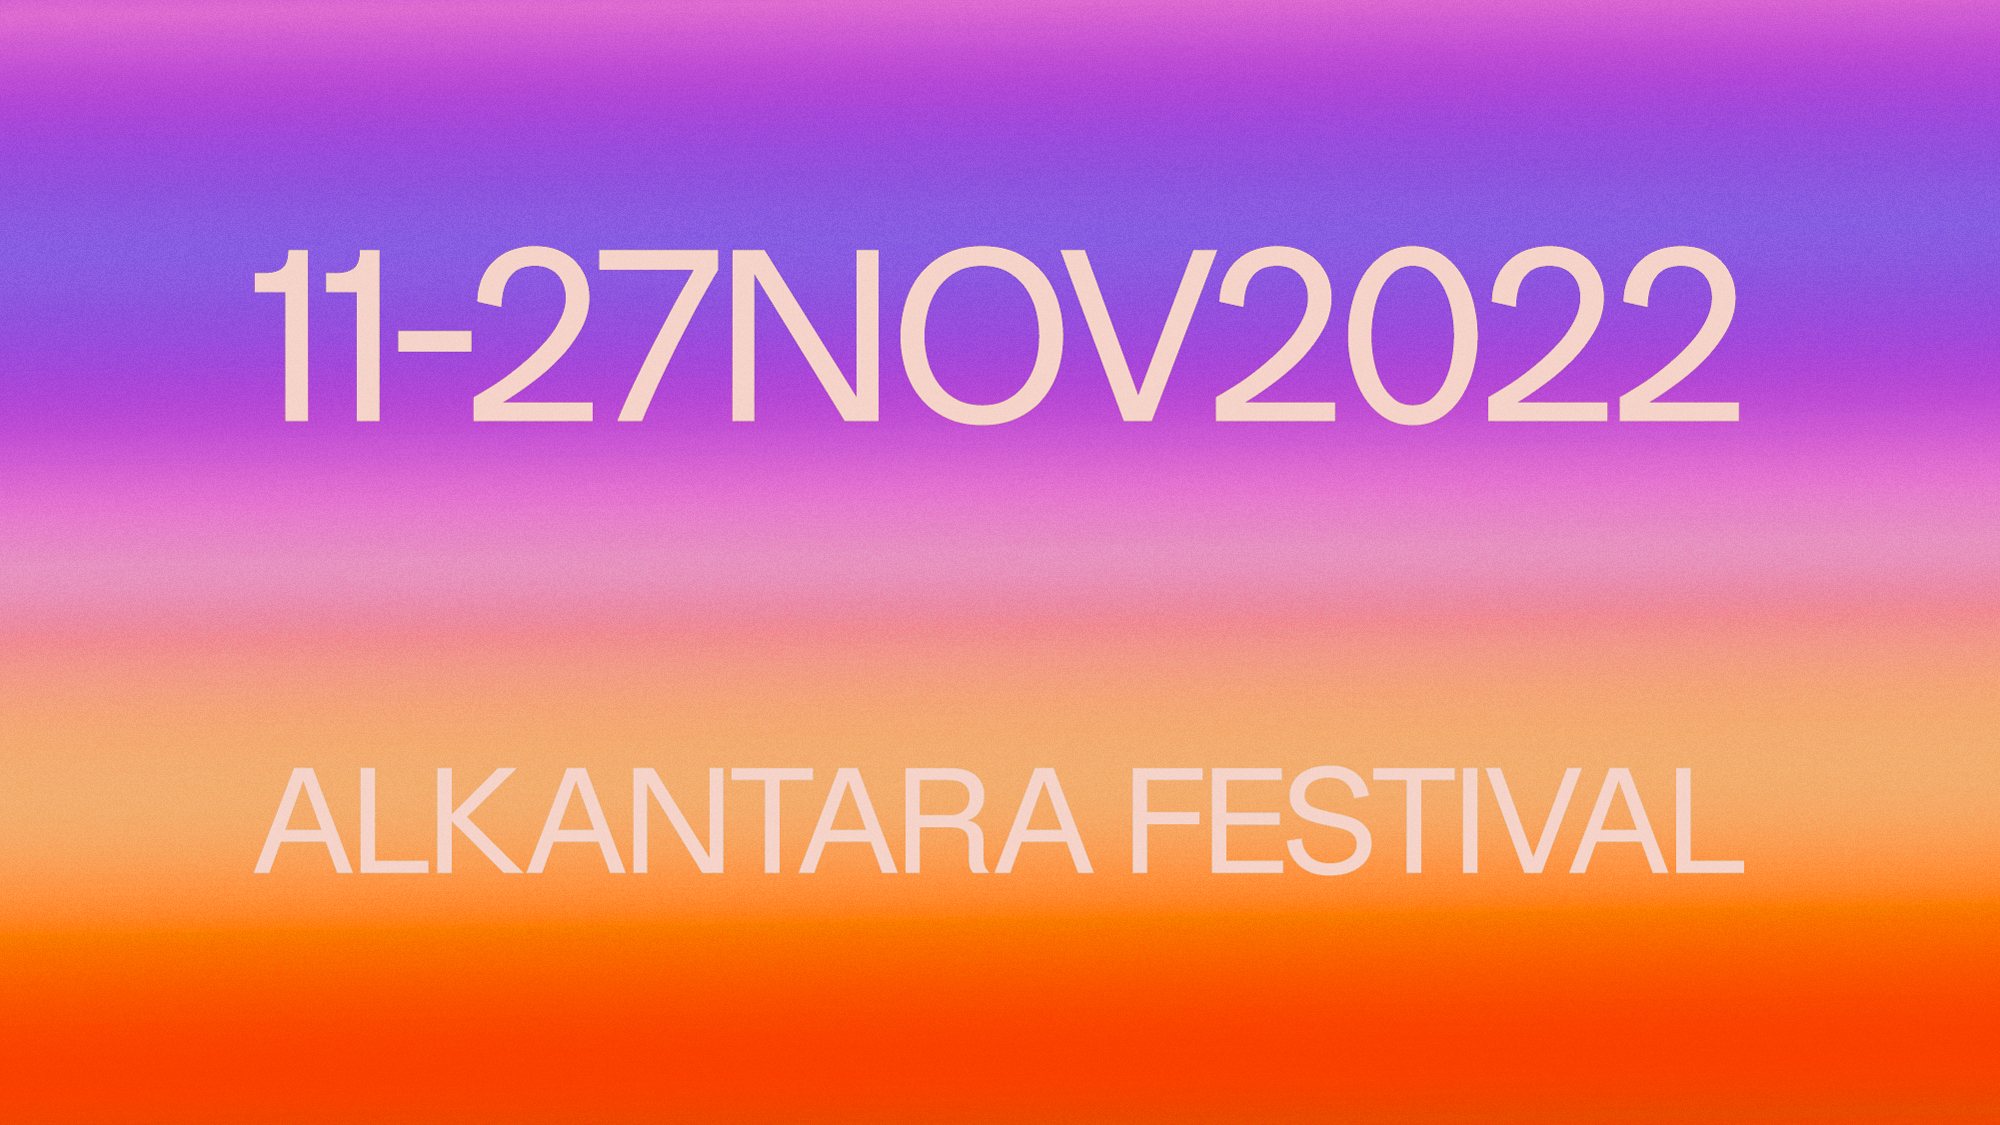 Alkantara Festival 2022